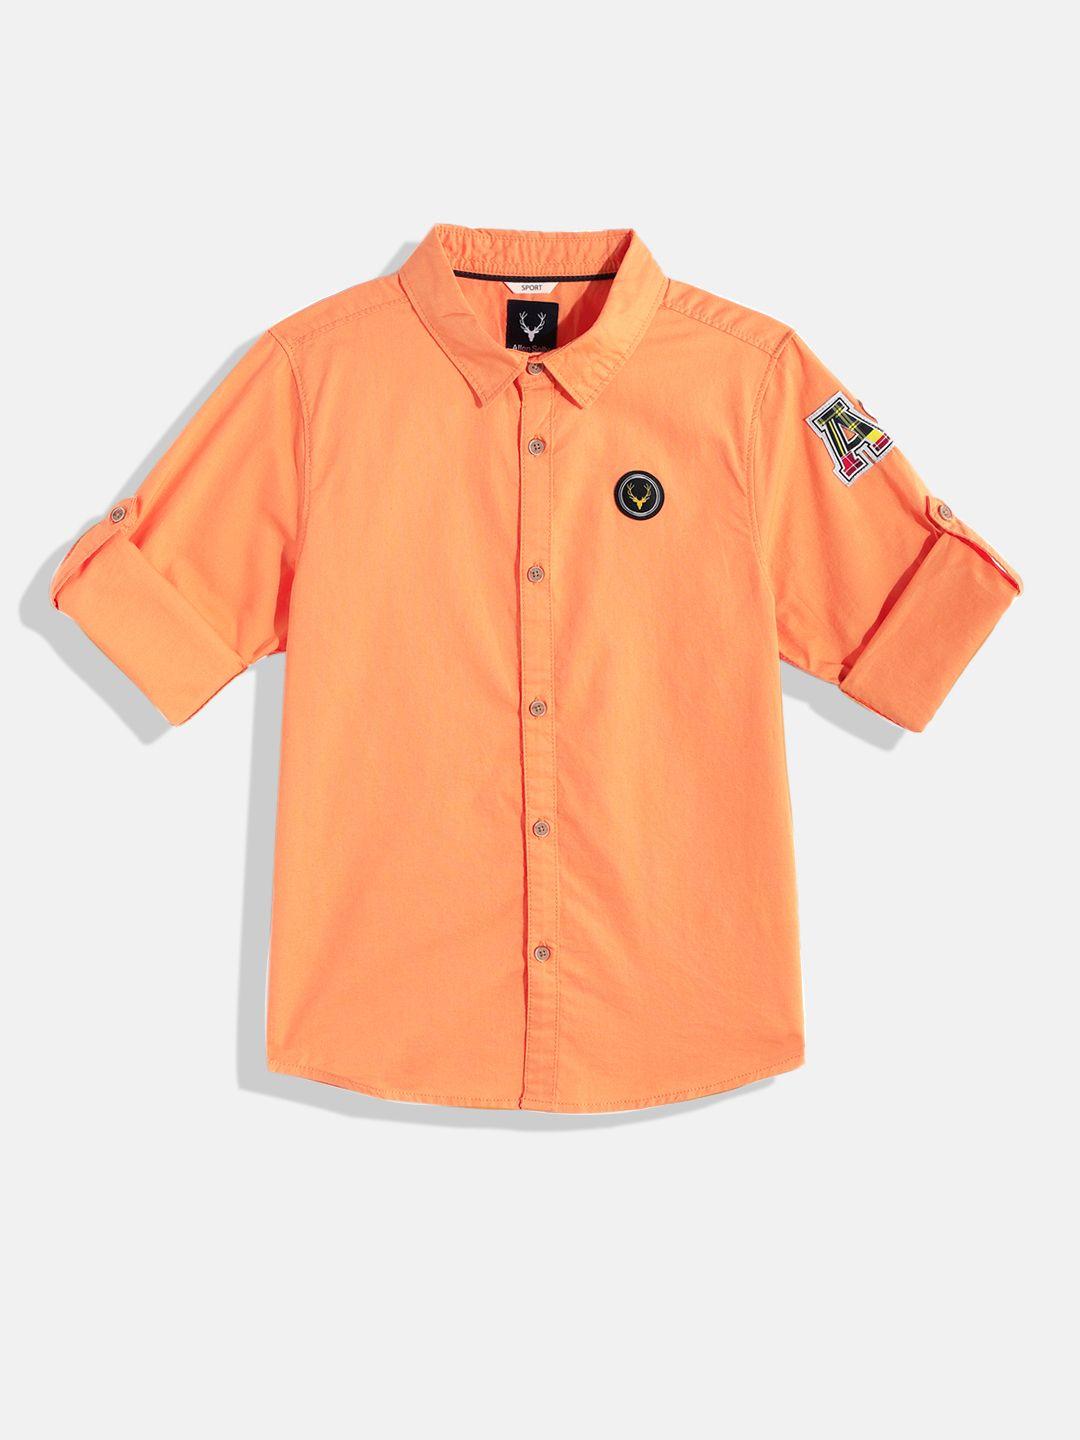 allen solly junior boys orange solid pure cotton casual shirt